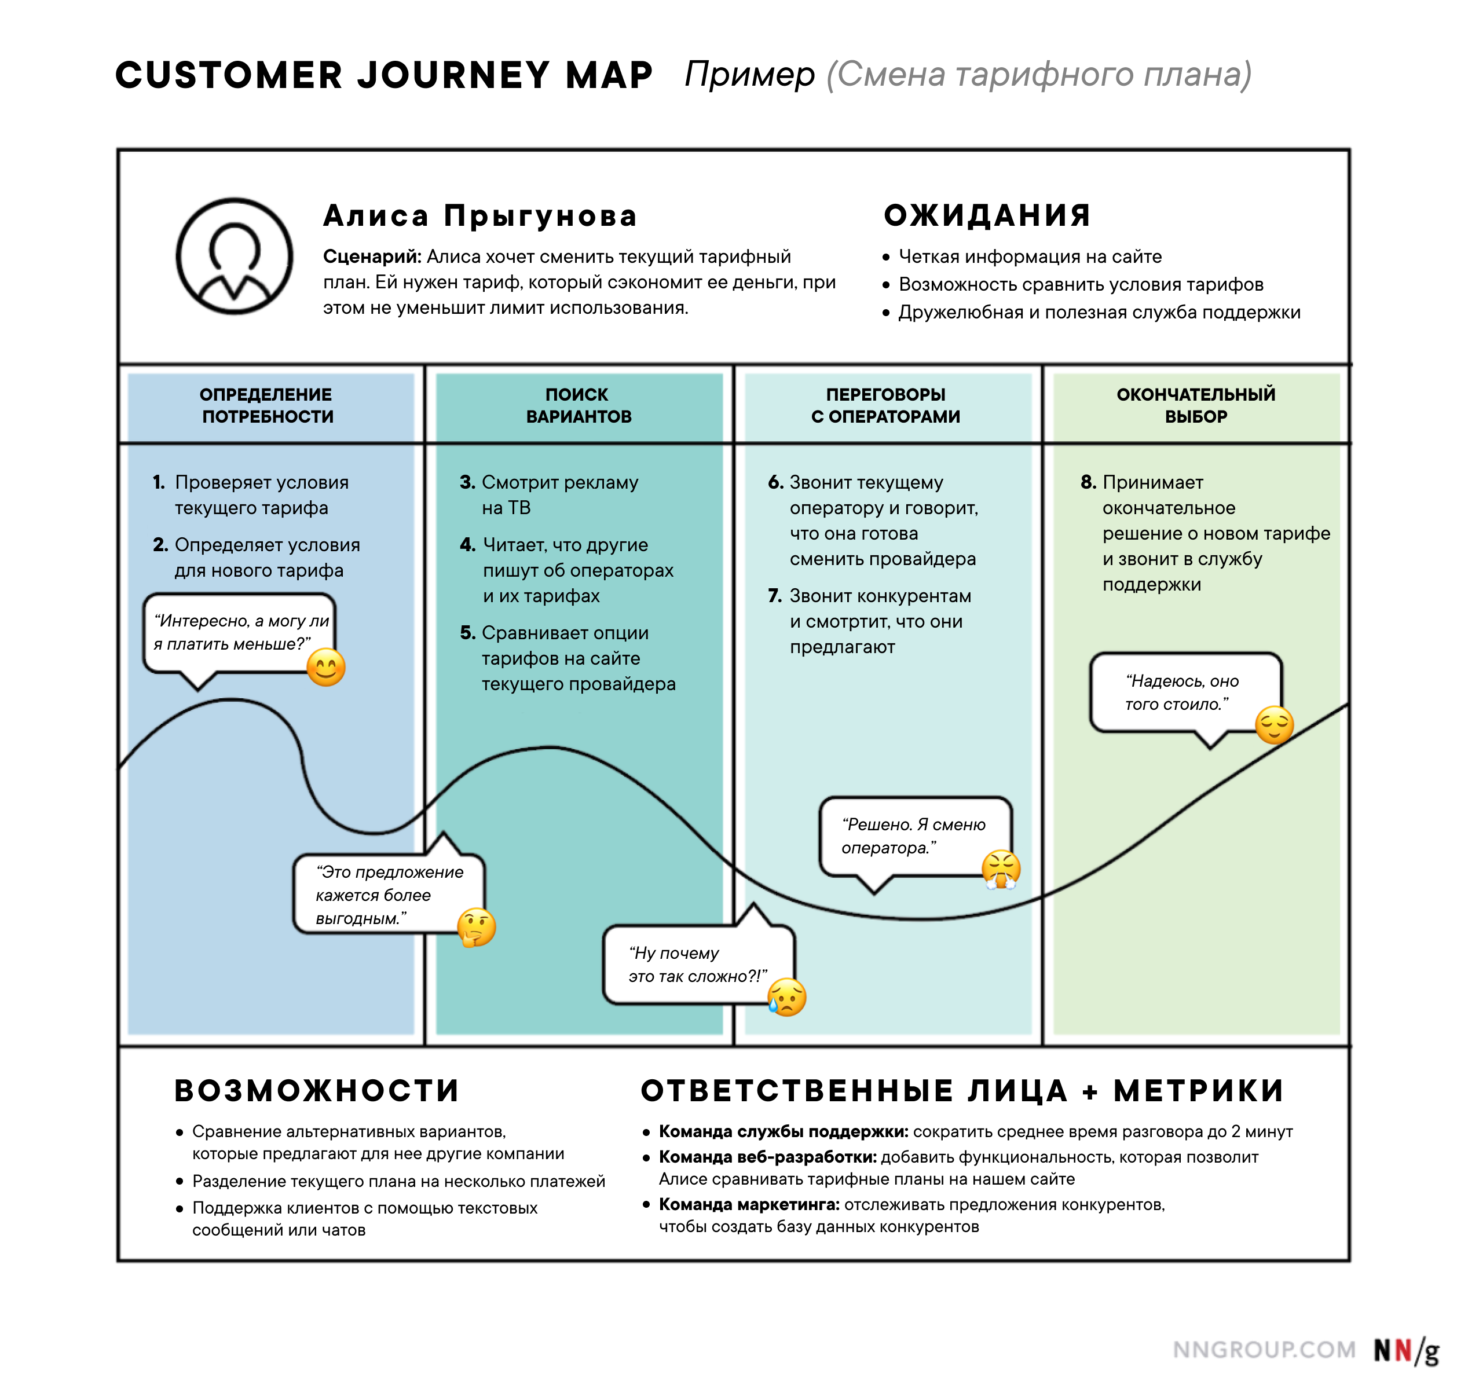 Что такое Customer Journey Map (CJM) и как построить ее правильно